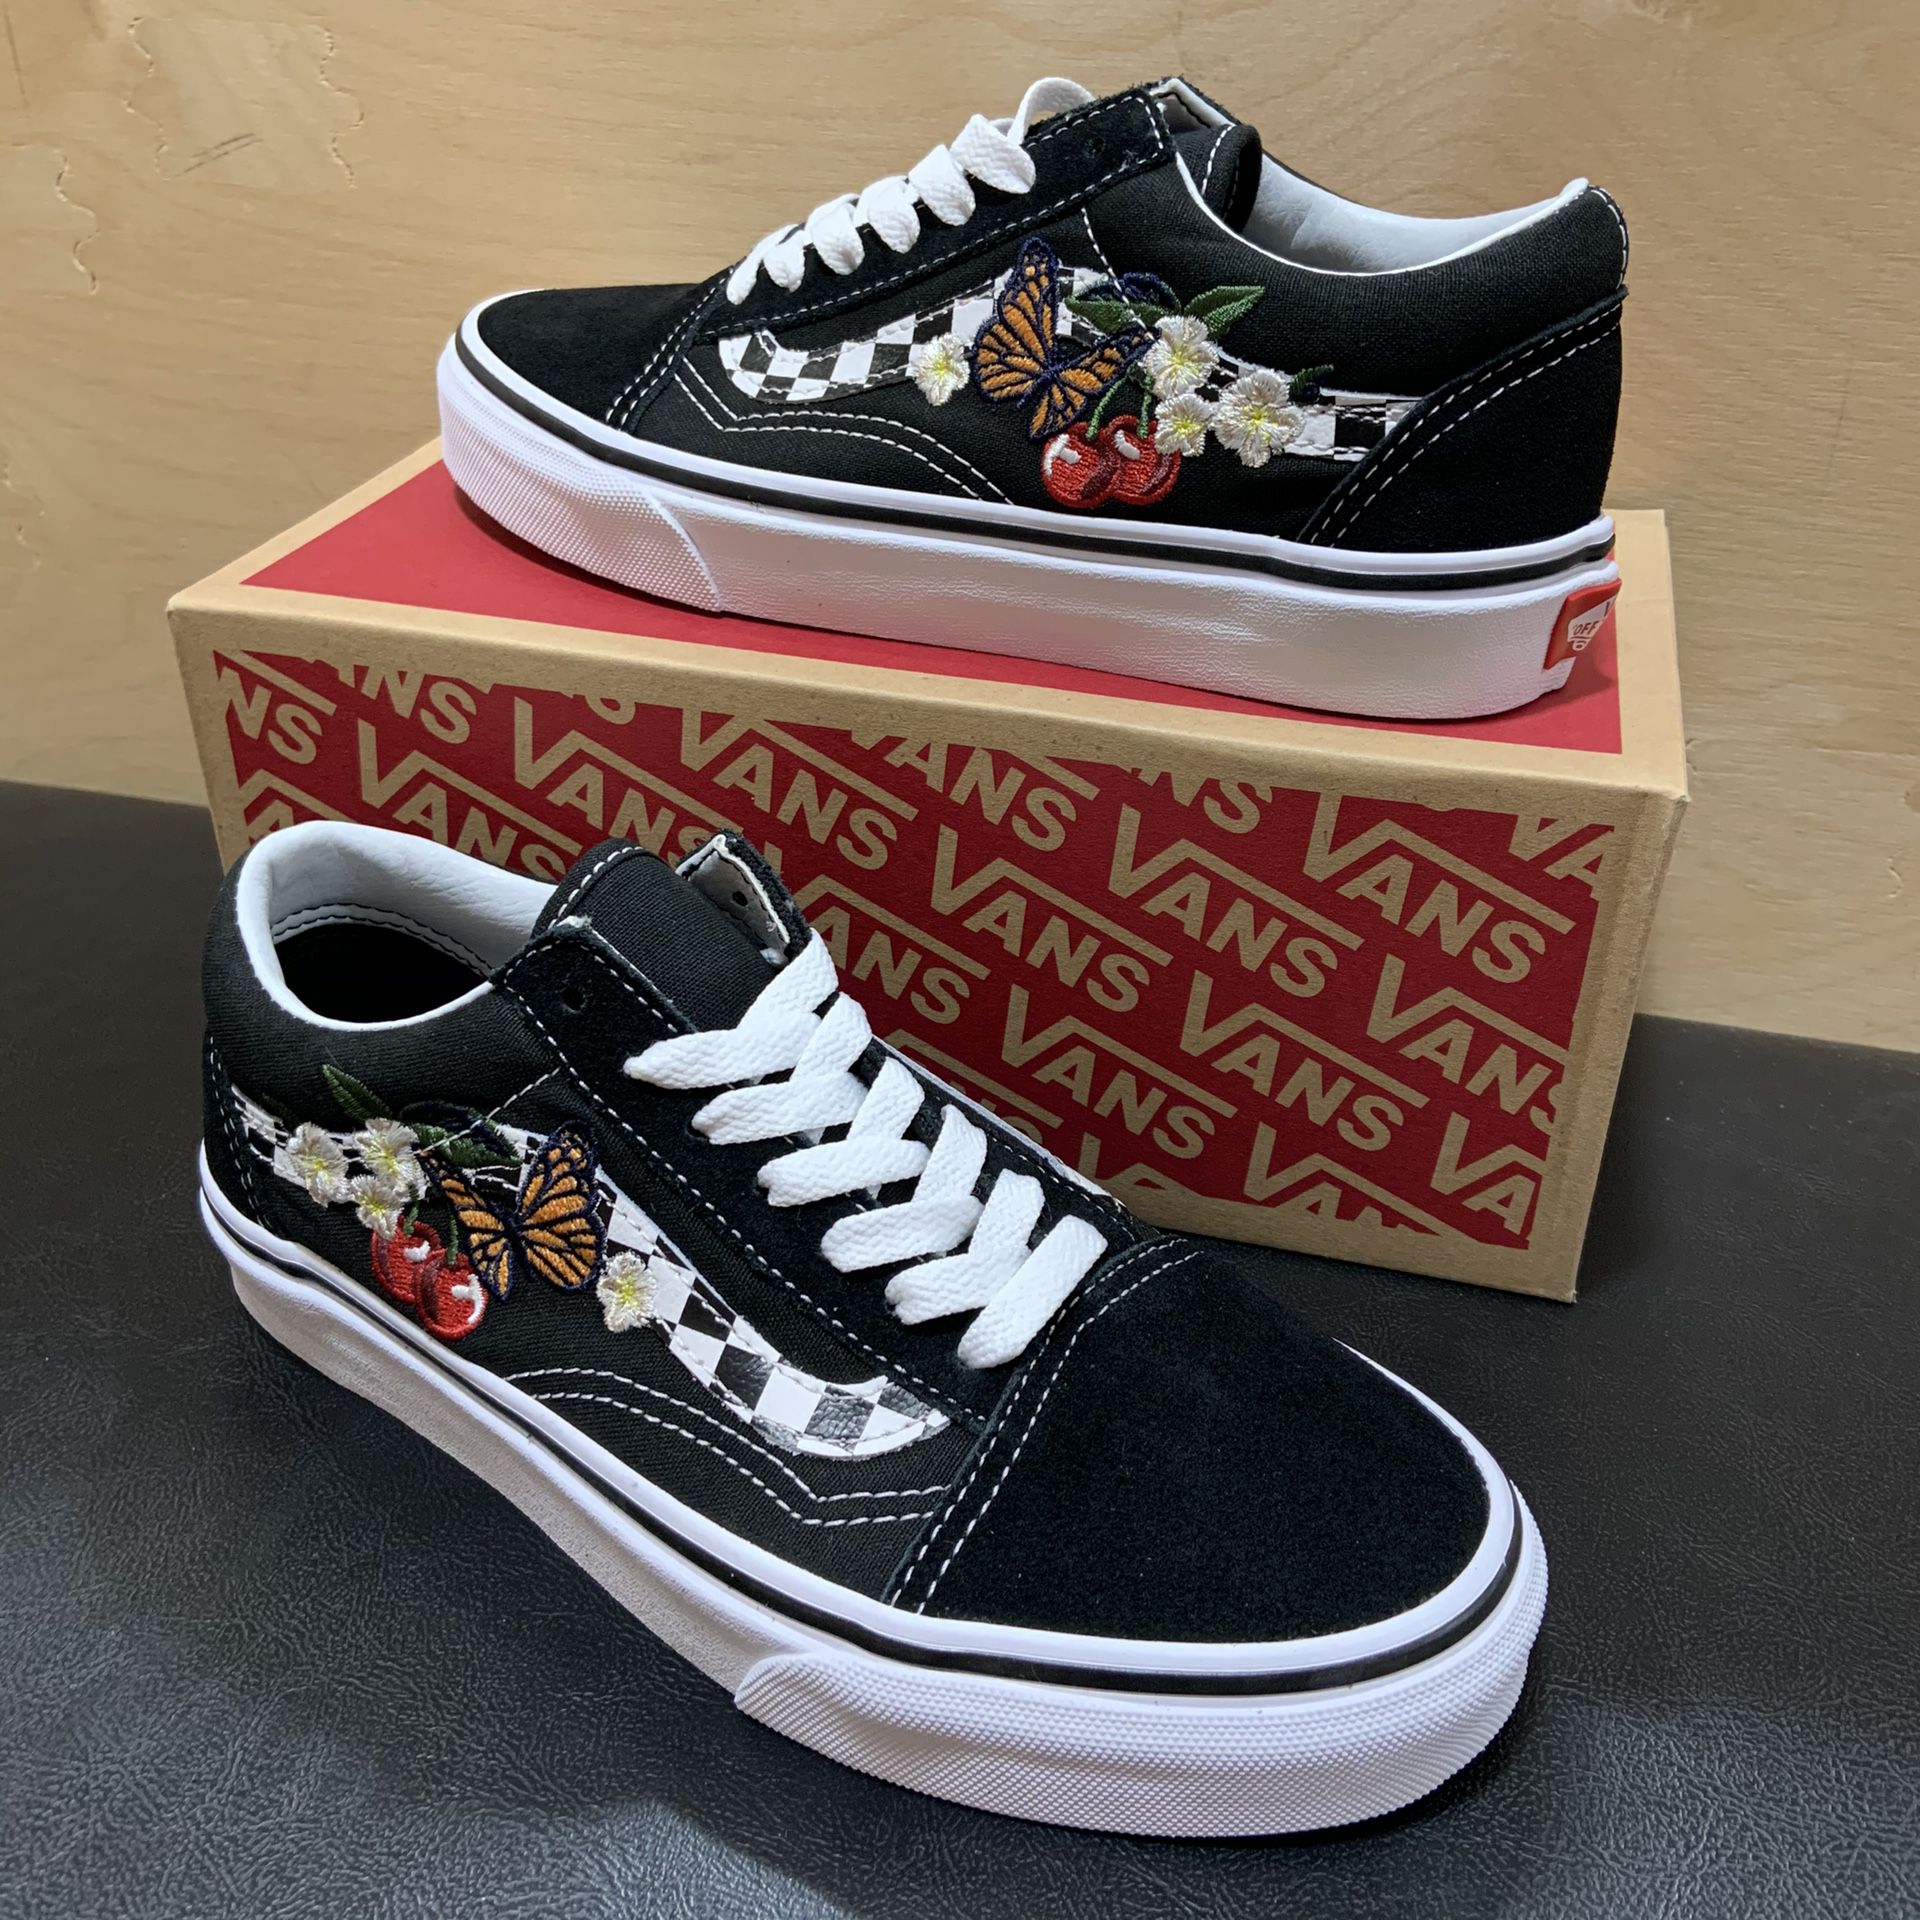 Women’s Vans Old Skool Shoes Black Checker Floral Brand New Sizes 5.5 or 6.0 skate skateboarding